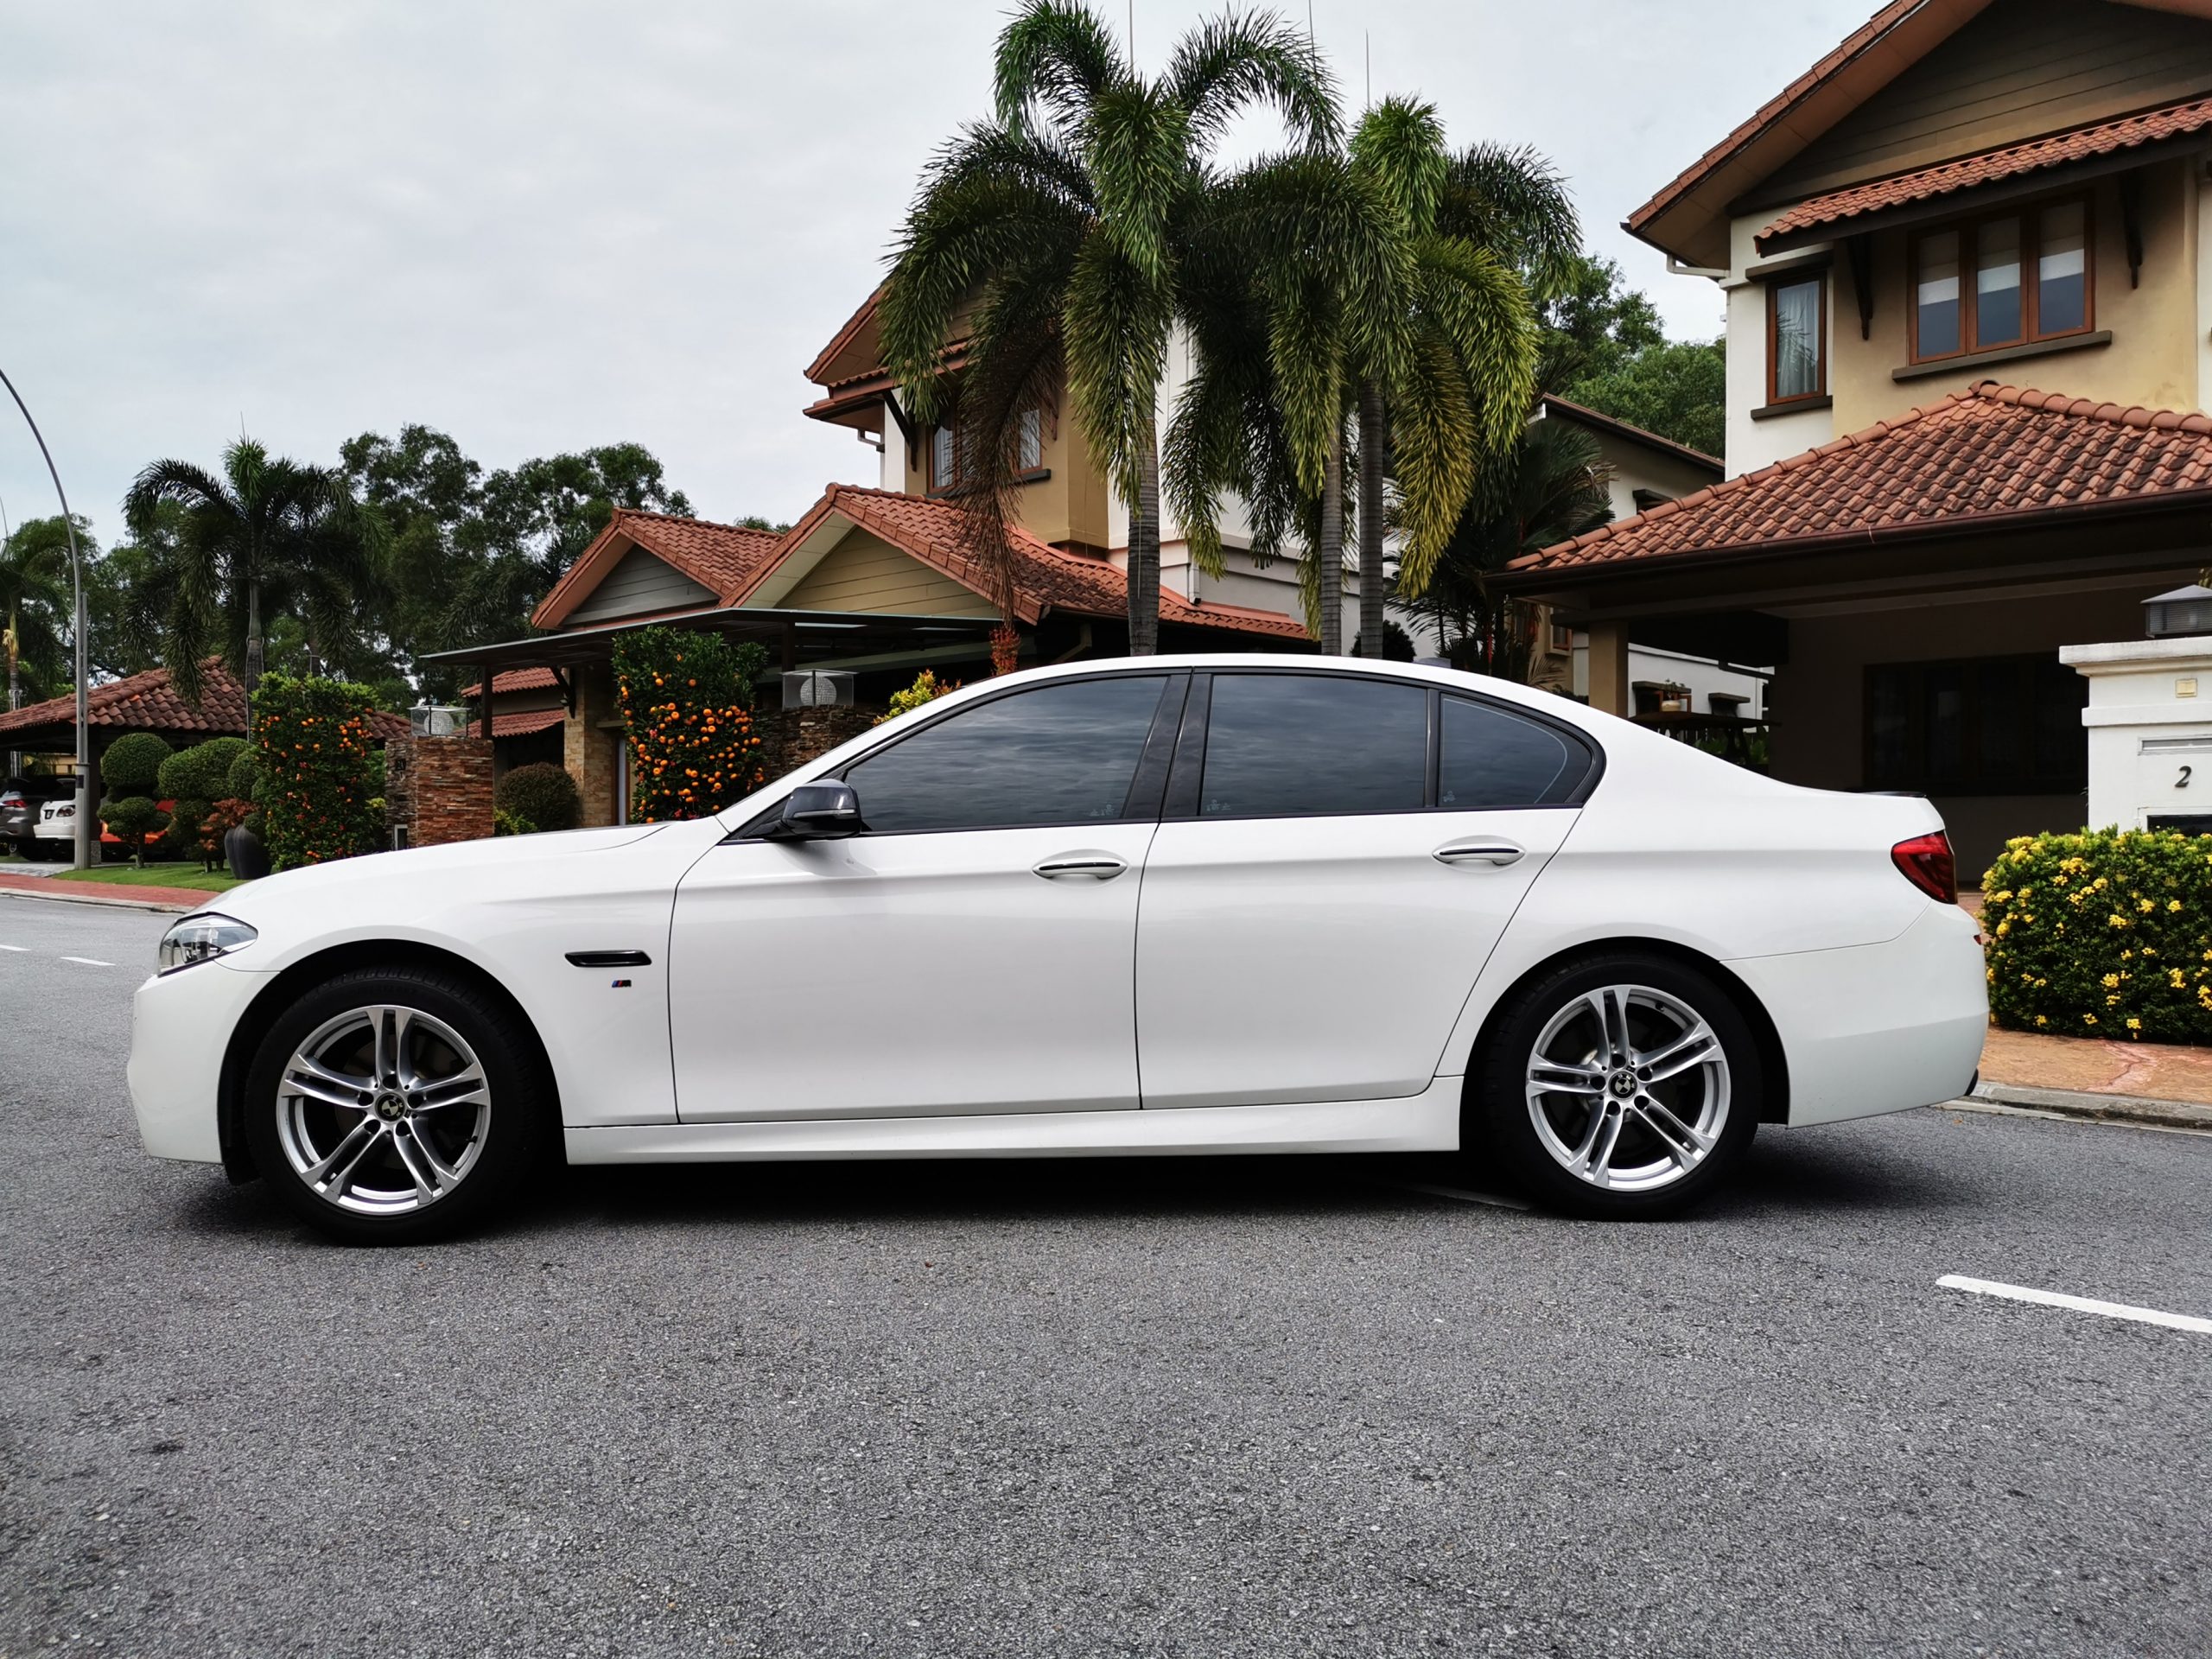 BMW 528i side view